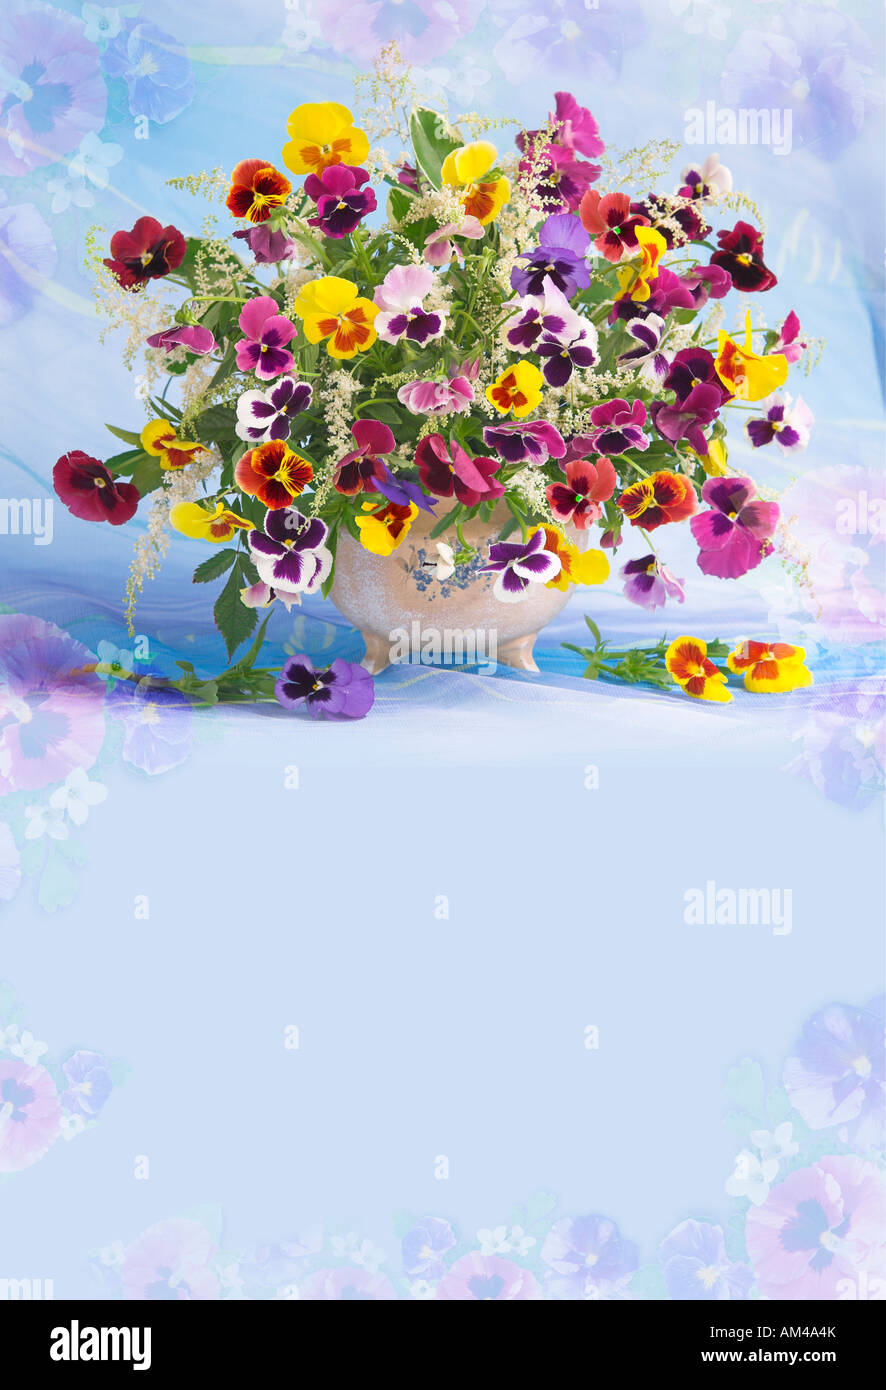 Studio Vertical coloré bouquet arrangé bouquet de fleurs de printemps fleurs pensées dans un panier sur un fond bleu pastel Banque D'Images